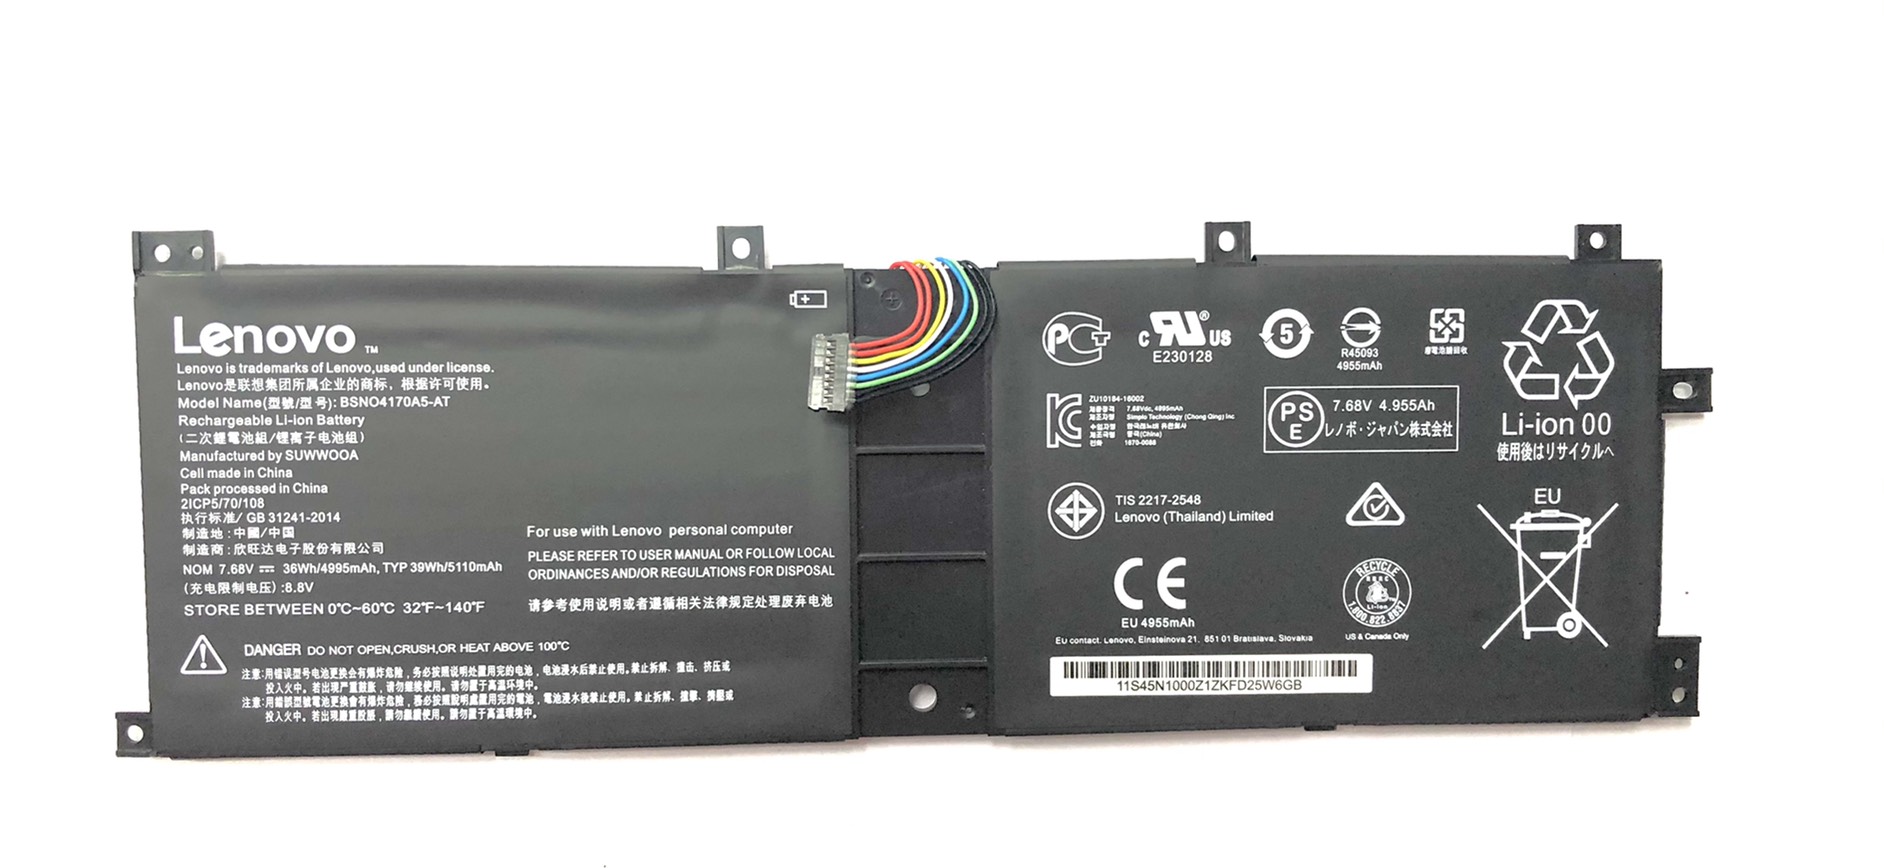 คำอธิบายเพิ่มเติมเกี่ยวกับ แบตเตอรี่ โน๊ตบุ๊ค Battery Notebook Lenovo Miix 520-12IKB 510-12IKB Series 7.68V